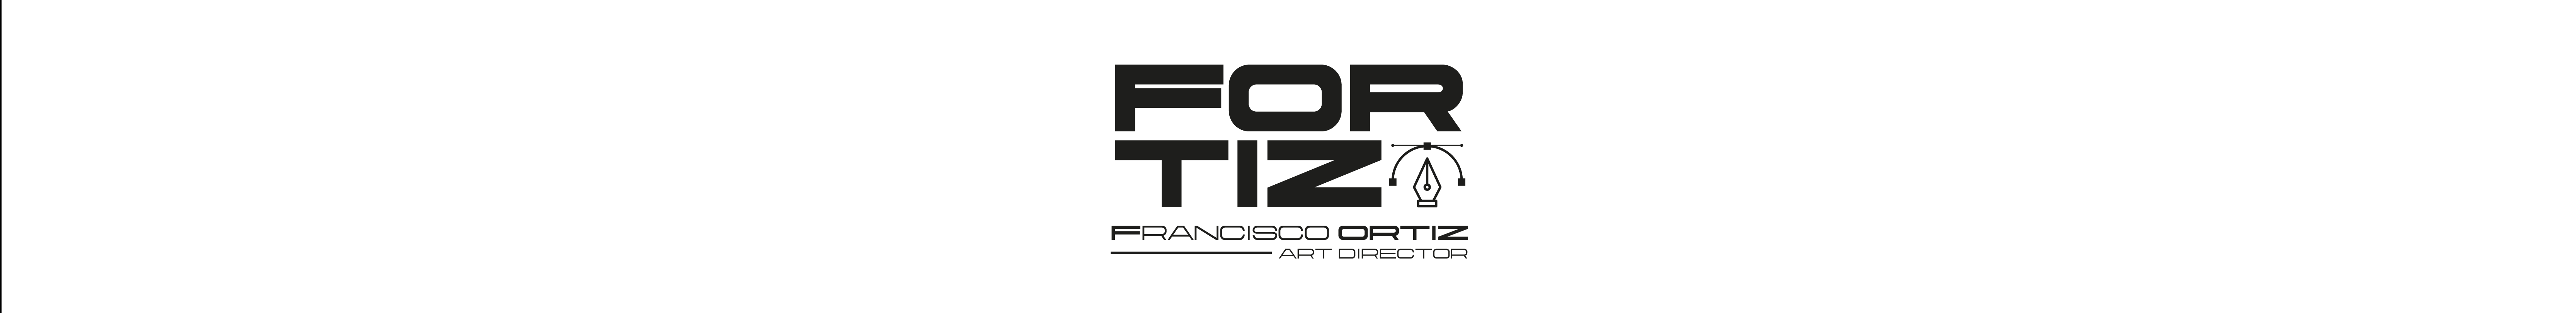 Francisco Ortiz profil başlığı